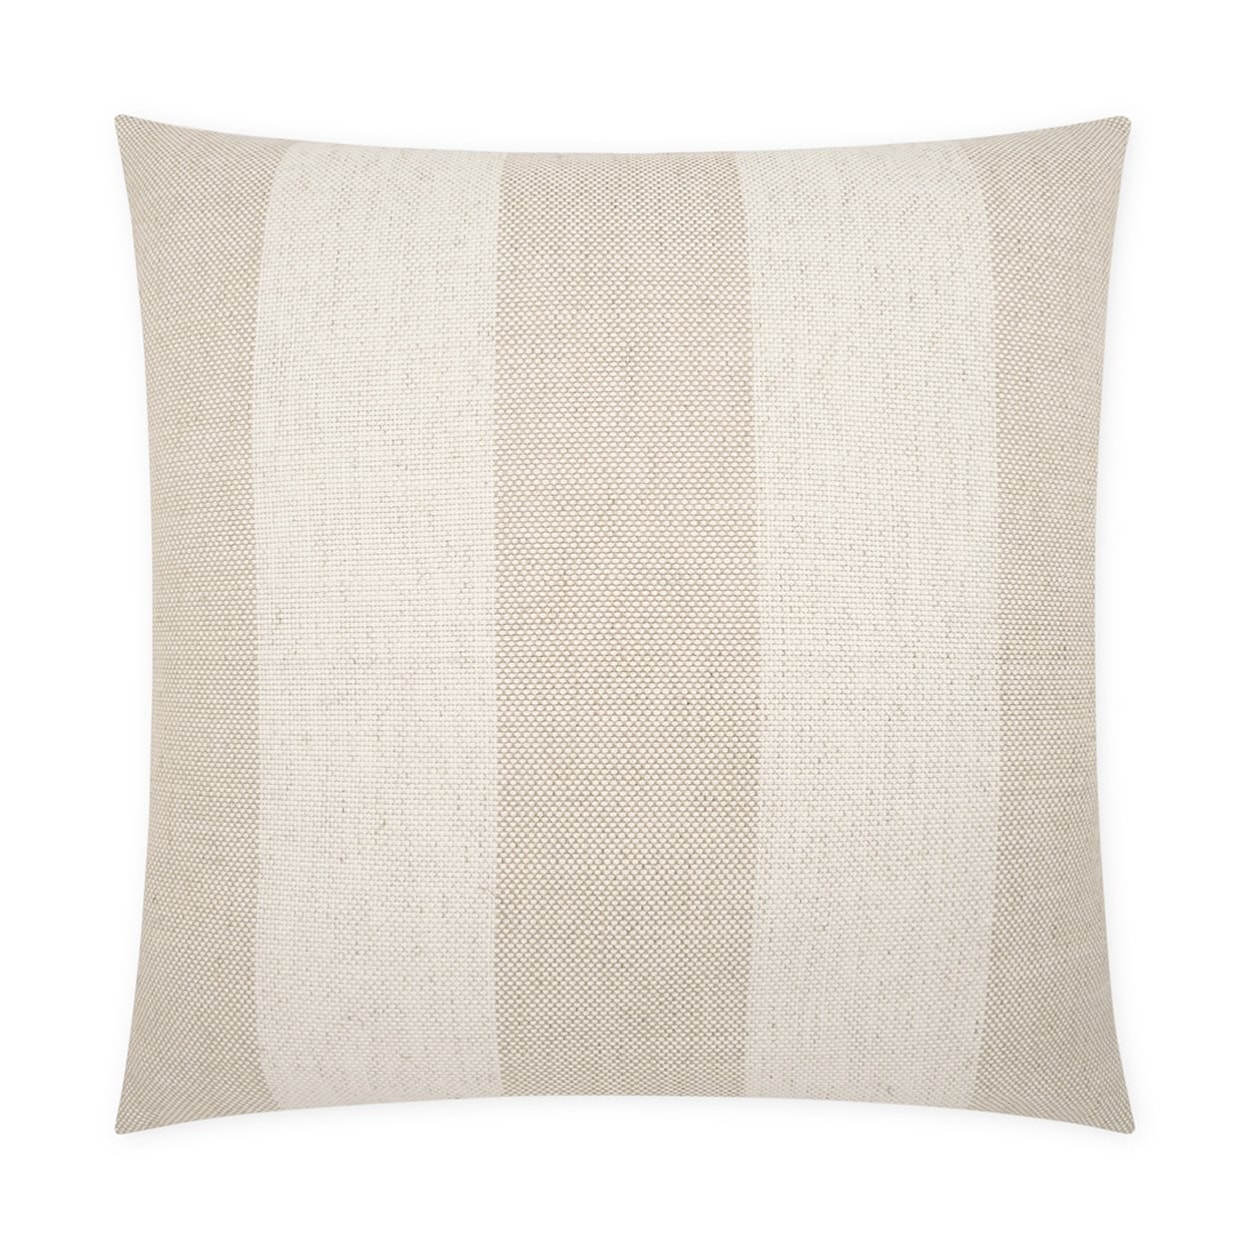 D.V. KAP Home Indoor Pillows Skippy-Flax 22" x 22" Throw Pillow